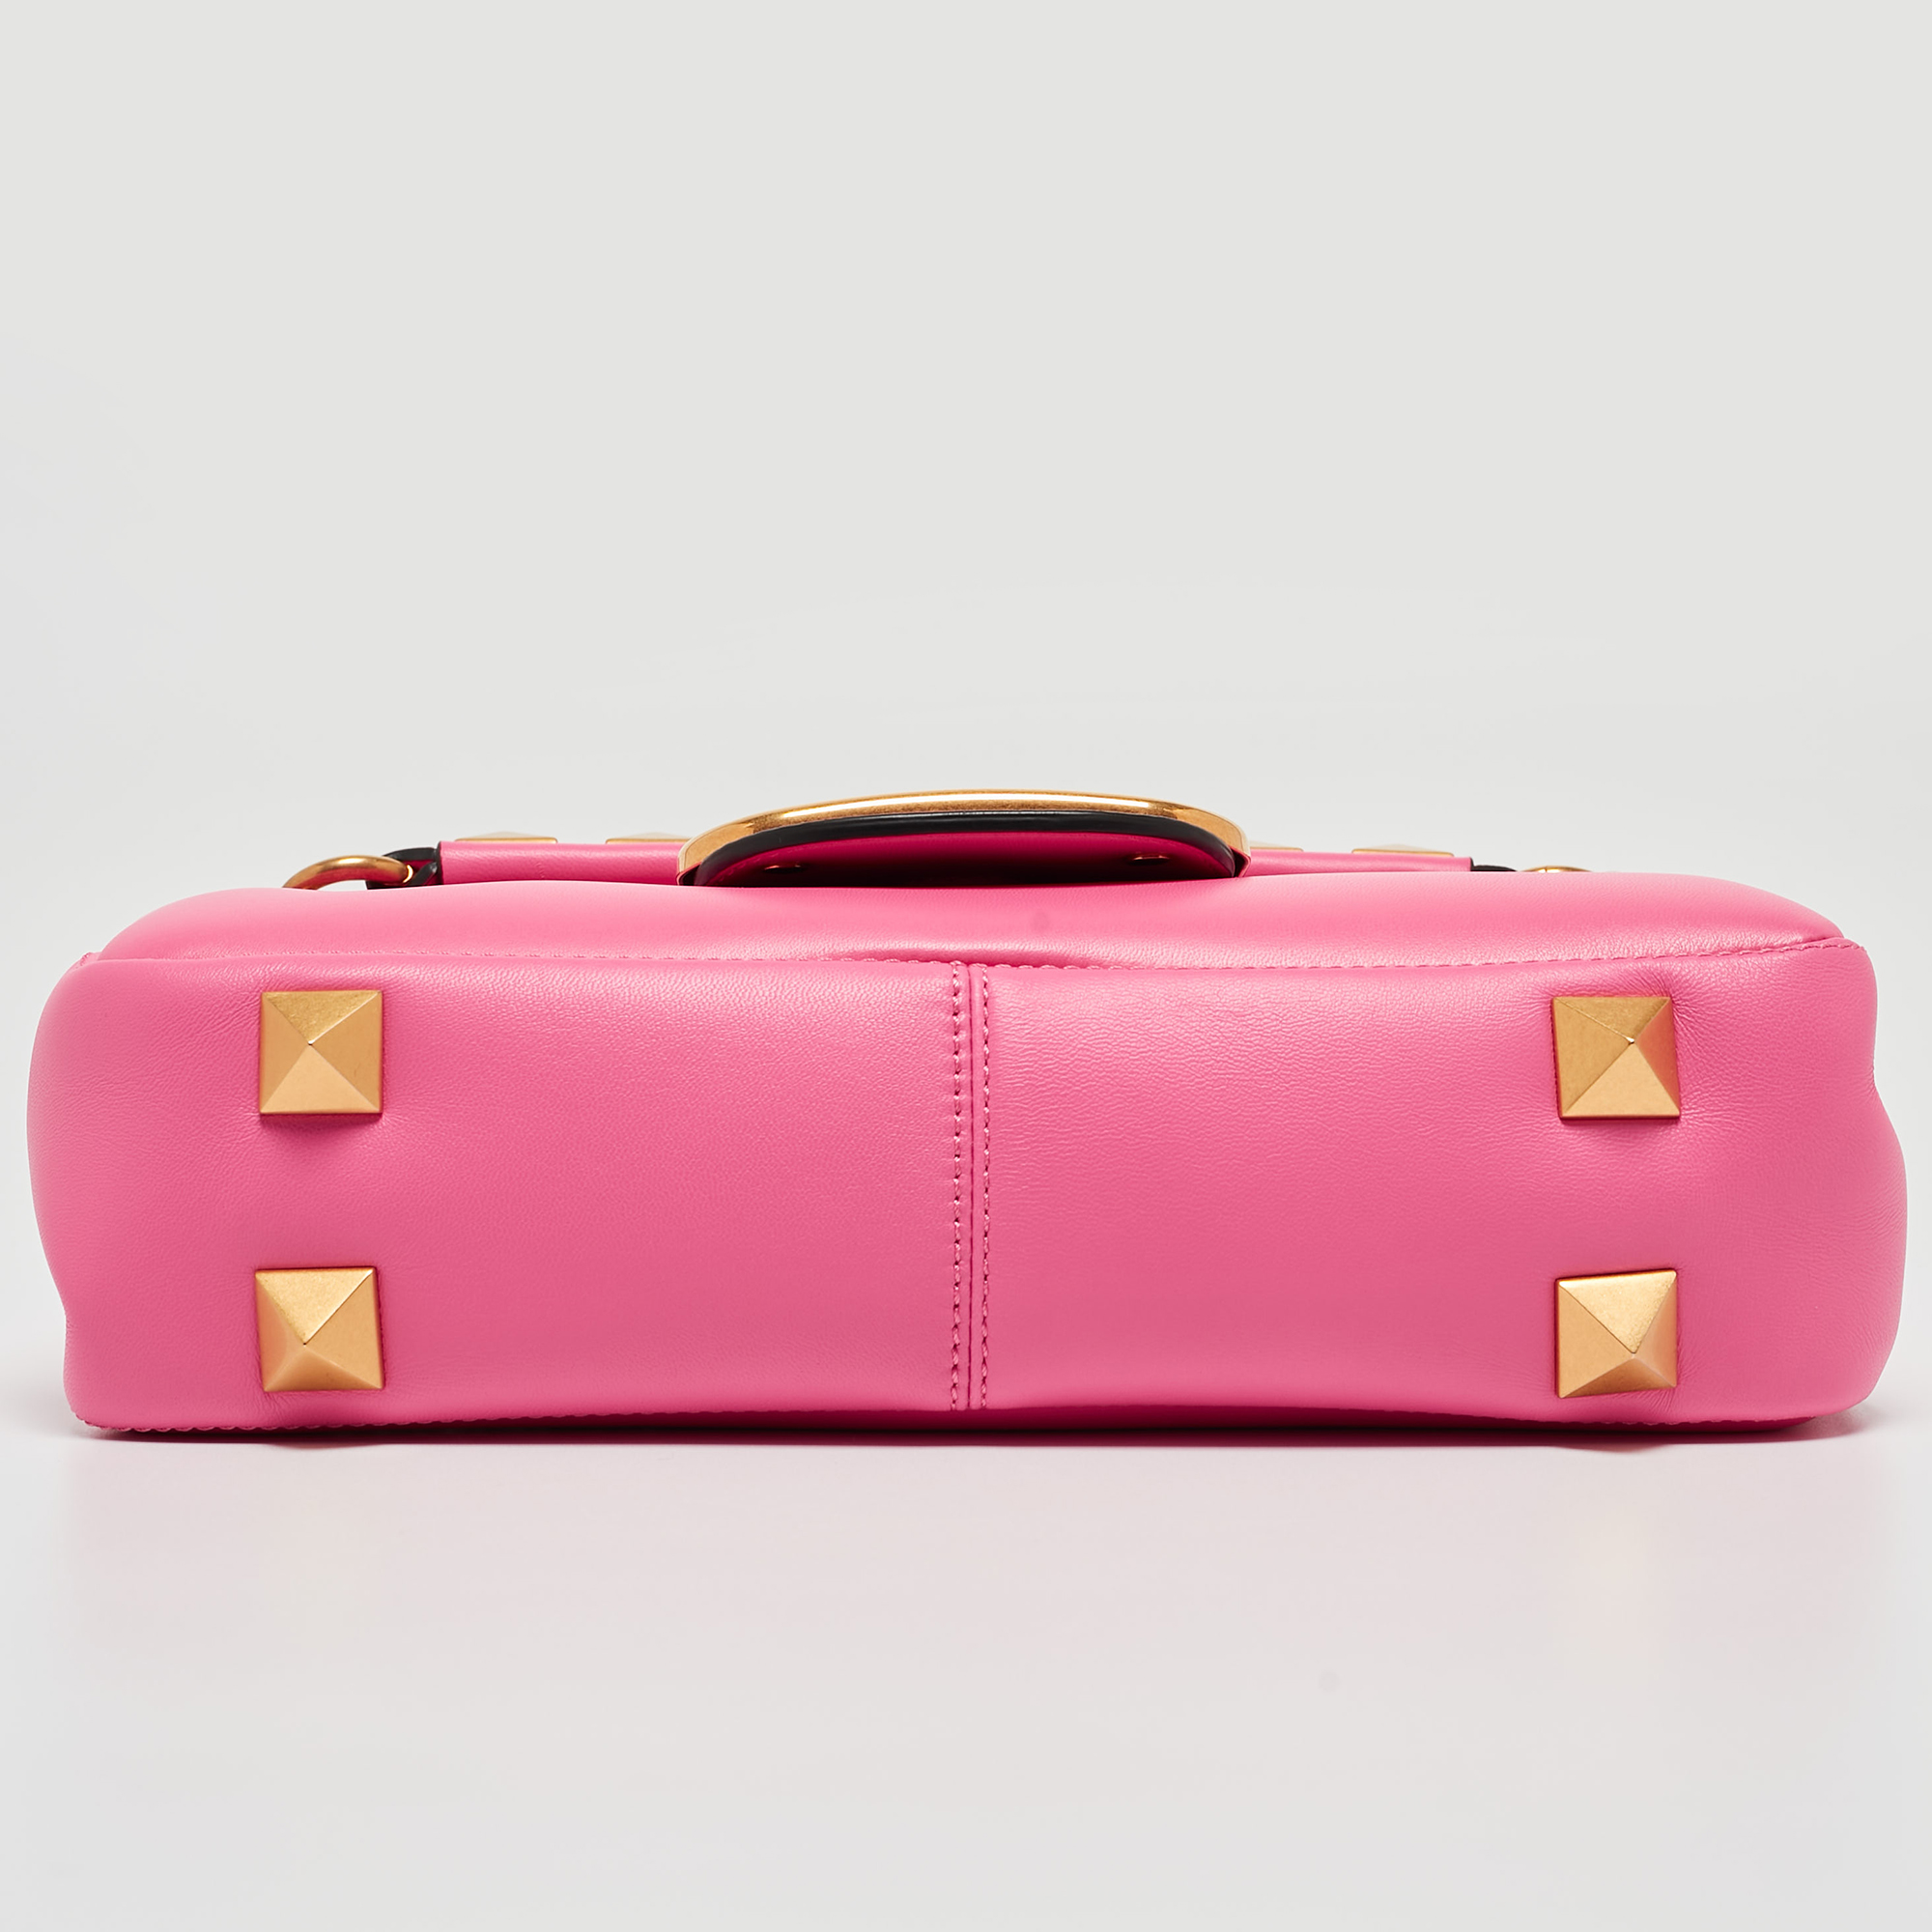 Valentino Pink Leather Stud Sign Shoulder Bag